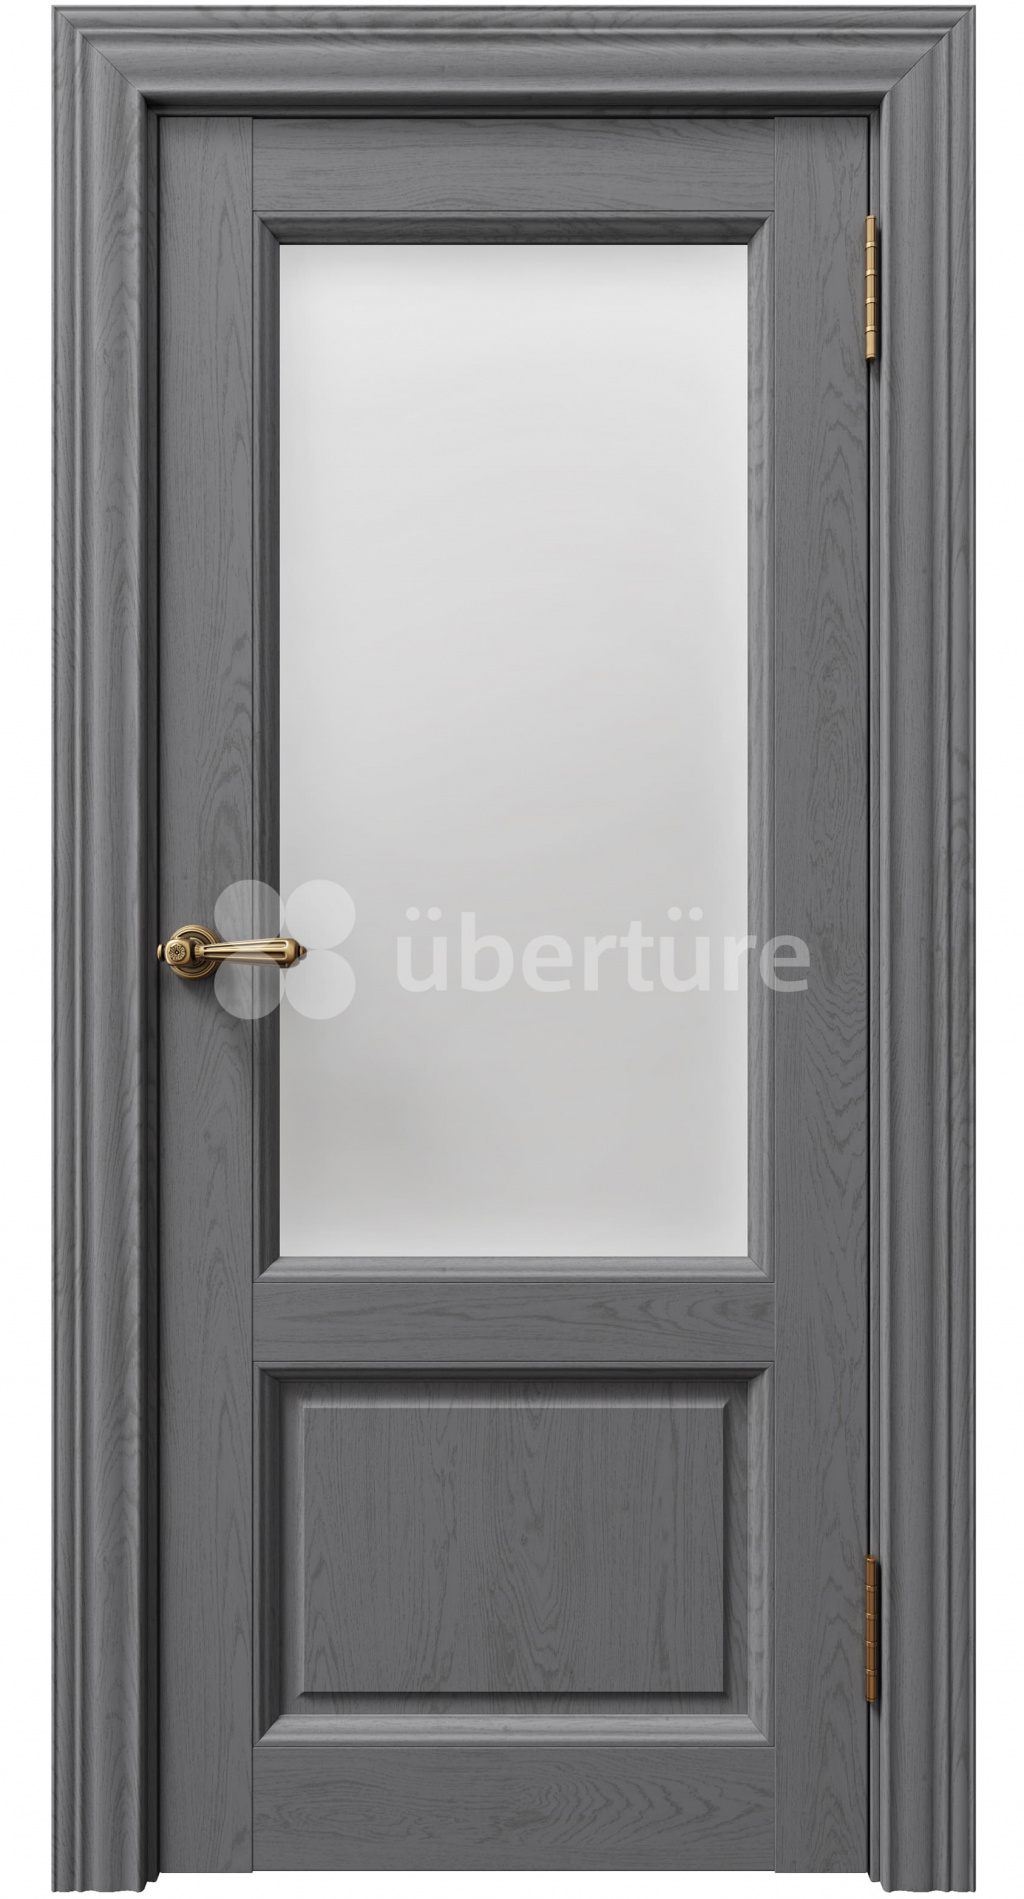 Uberture Межкомнатная дверь Сорренто ПДО 80010, арт. 17387 - фото №2